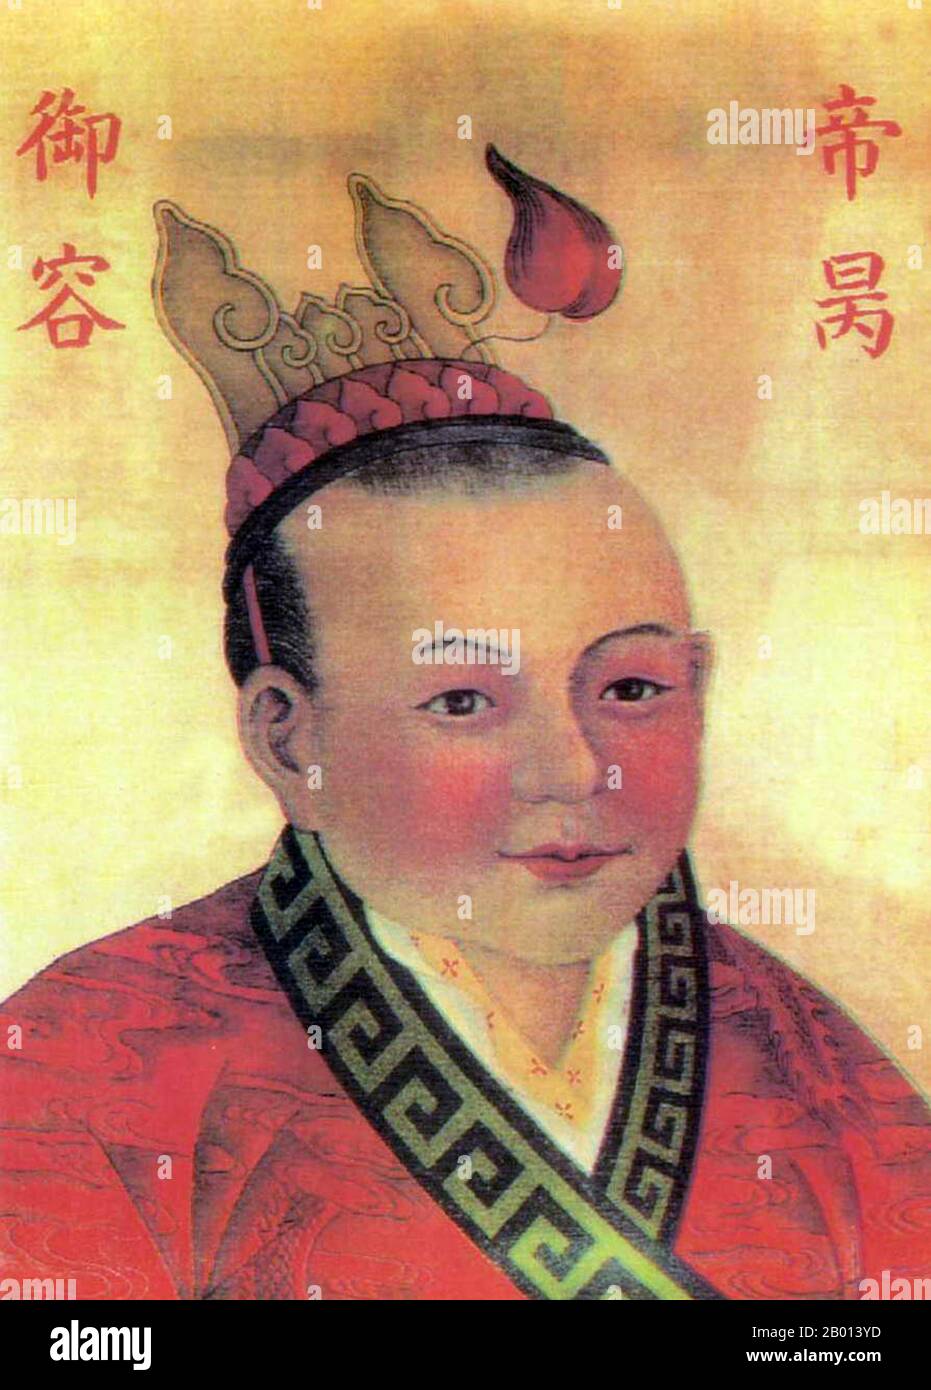 China: Kaiser Huaizong (12. Februar 1272 - 19. März 1279), 18. Und letzter Herrscher der Song-Dynastie und 9. Und letzter Herrscher des südlichen Song (r. 1278-1279). Hängende Schriftrolle Malerei, c. 1278-1279. Kaiser Huaizong, persönlicher Name Zhao Bing und auch als Kaiser Bing bekannt, war der letzte Kaiser der südlichen Song Dynastie. Es wird berichtet, dass Kaiser Huaizong, der siebte Sohn von Kaiser Duzong, bei der Seeschlacht von Yamen gestorben ist. Ein Beamter, Lu Xiufu, der erkannte, dass alles verloren war, ergriff den Kaiser und sprang von den nahe gelegenen Klippen ins Meer, als er den mongolischen Invasoren trotzte. Stockfoto